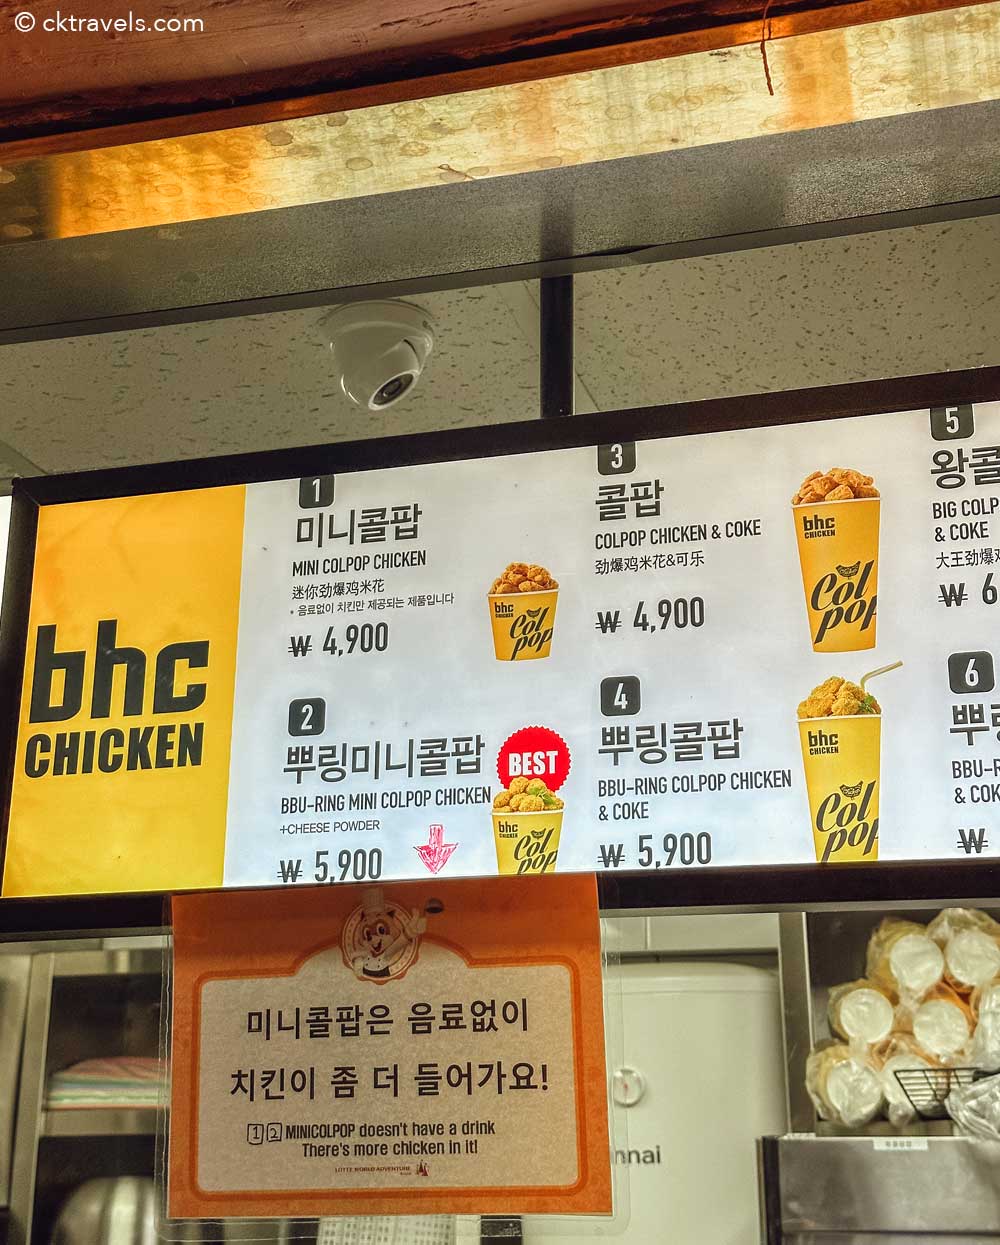 BHC Chicken at Lotte World Busan